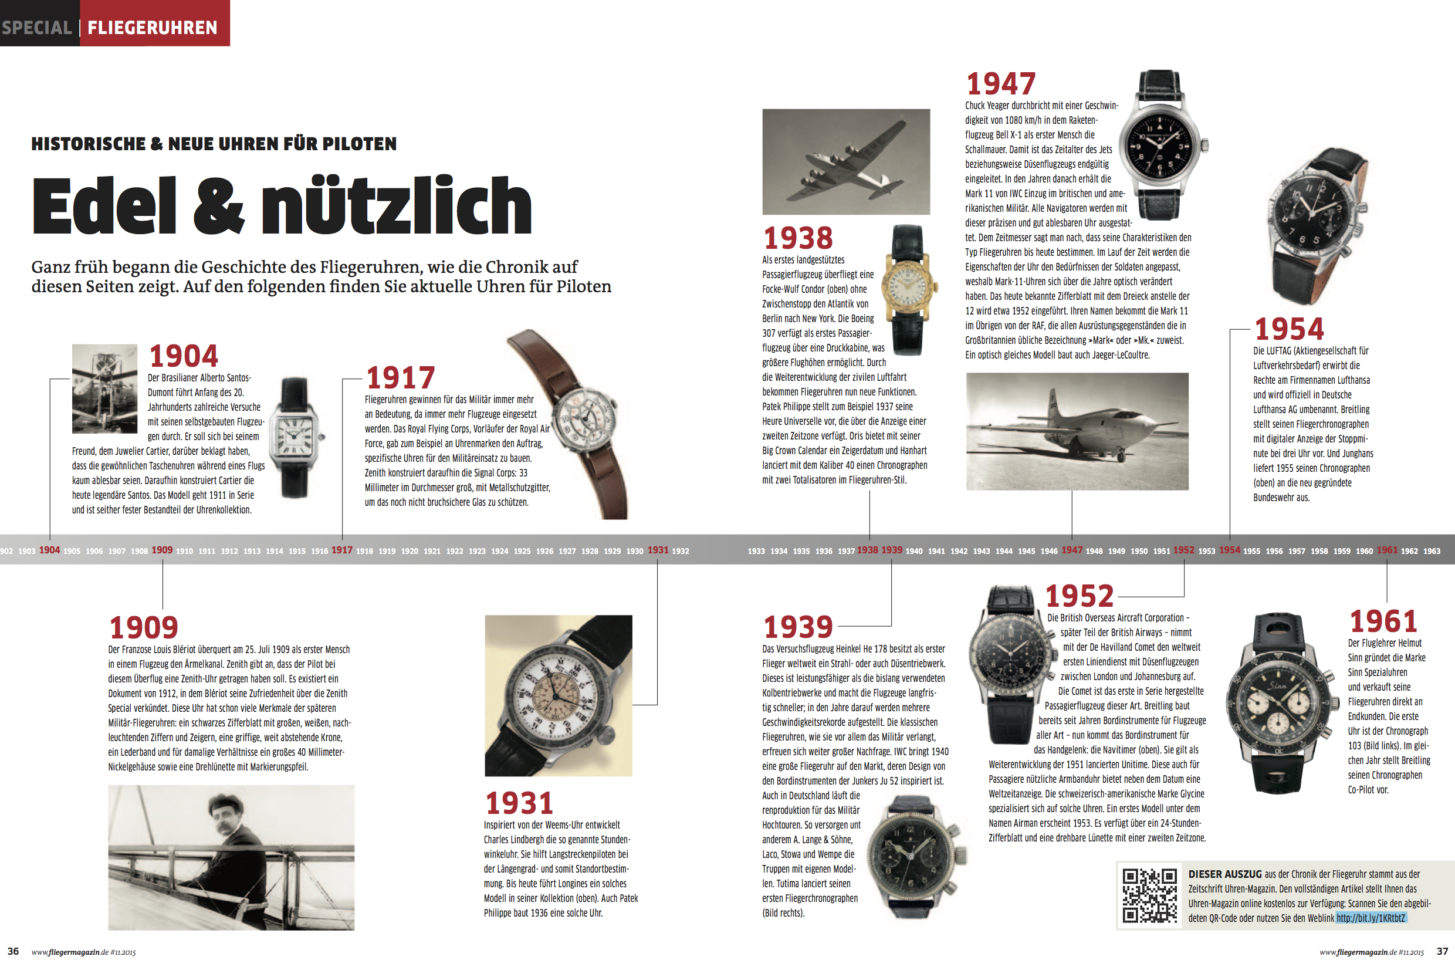 Das Fliegeruhren-Special im fliegermagazin #11.2015